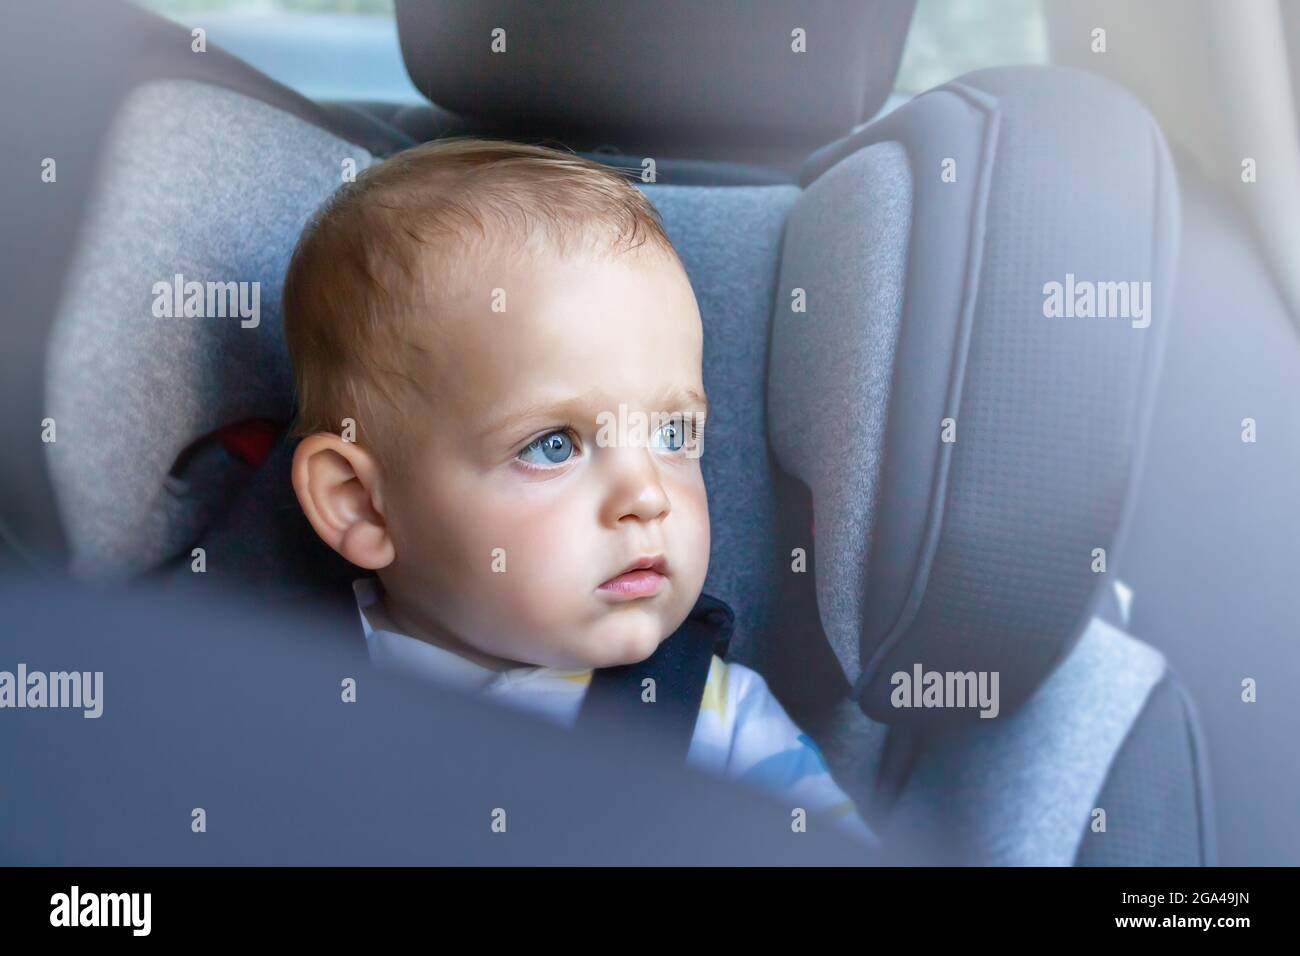 Il bambino nel seggiolino per auto osservata attraverso il sedile